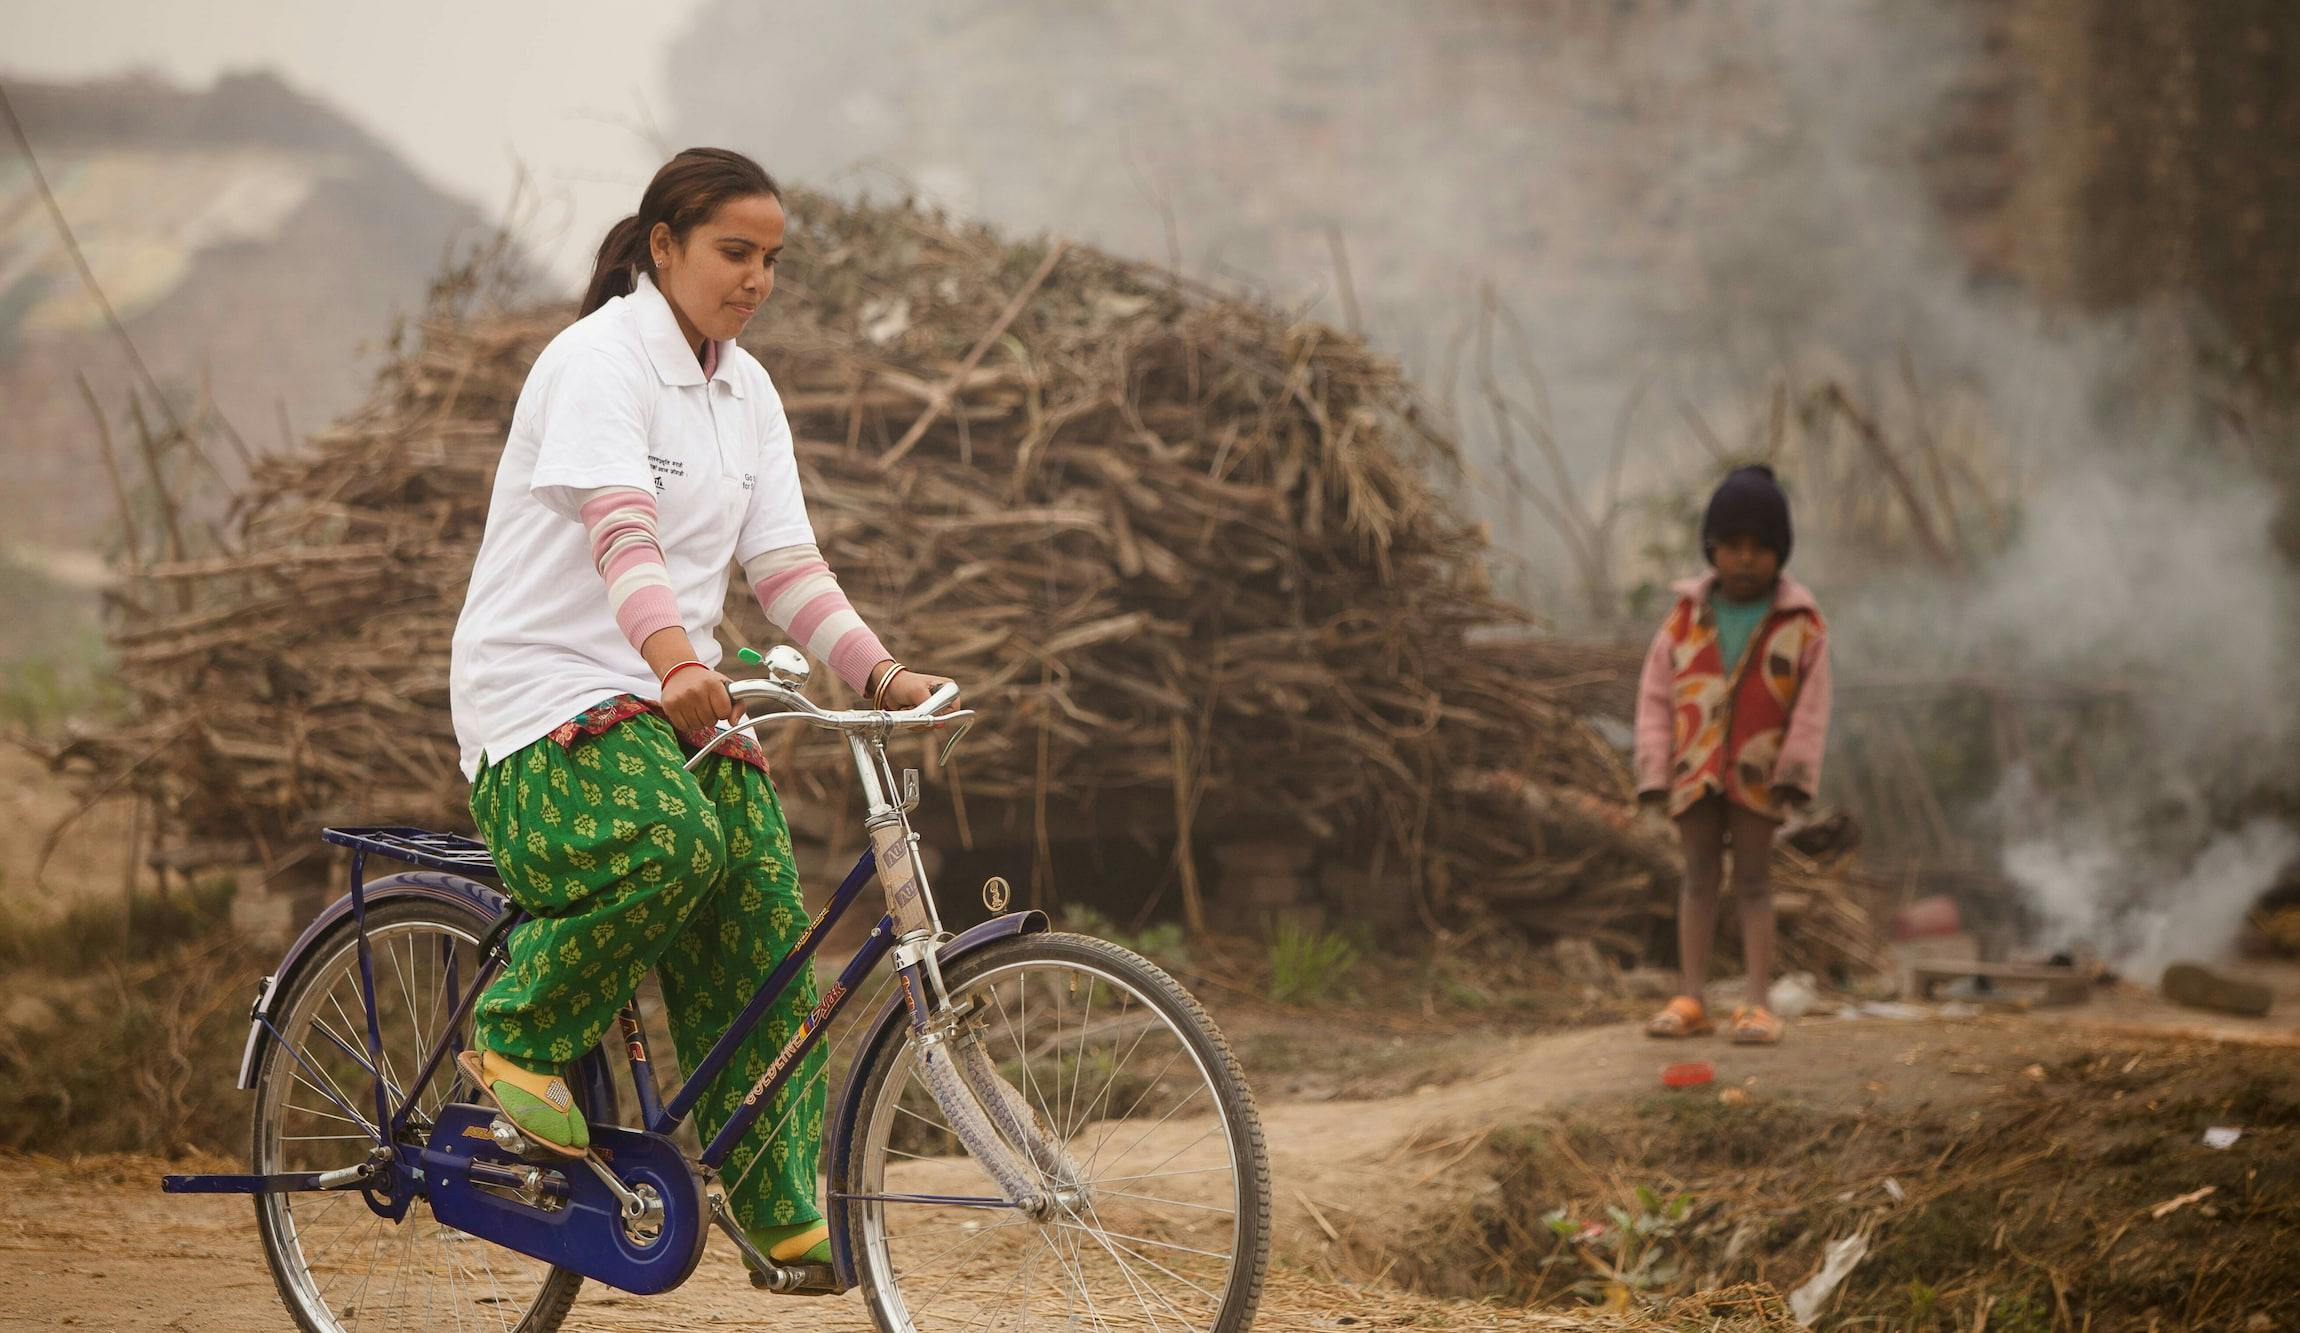 Eine FAIRMED-Mitarbeiterin, gekleidet in grünen Hosen und einem weissen Polo-Shirt mit FAIRMED-Logo fährt mit einem Velo. Im Hintergrund ist eine karge Landschaft in Nepal zu sehen. Ausserdem ist im Hintergrund ein Mädchen zusehen, das eher winterlich gekleidet ist.